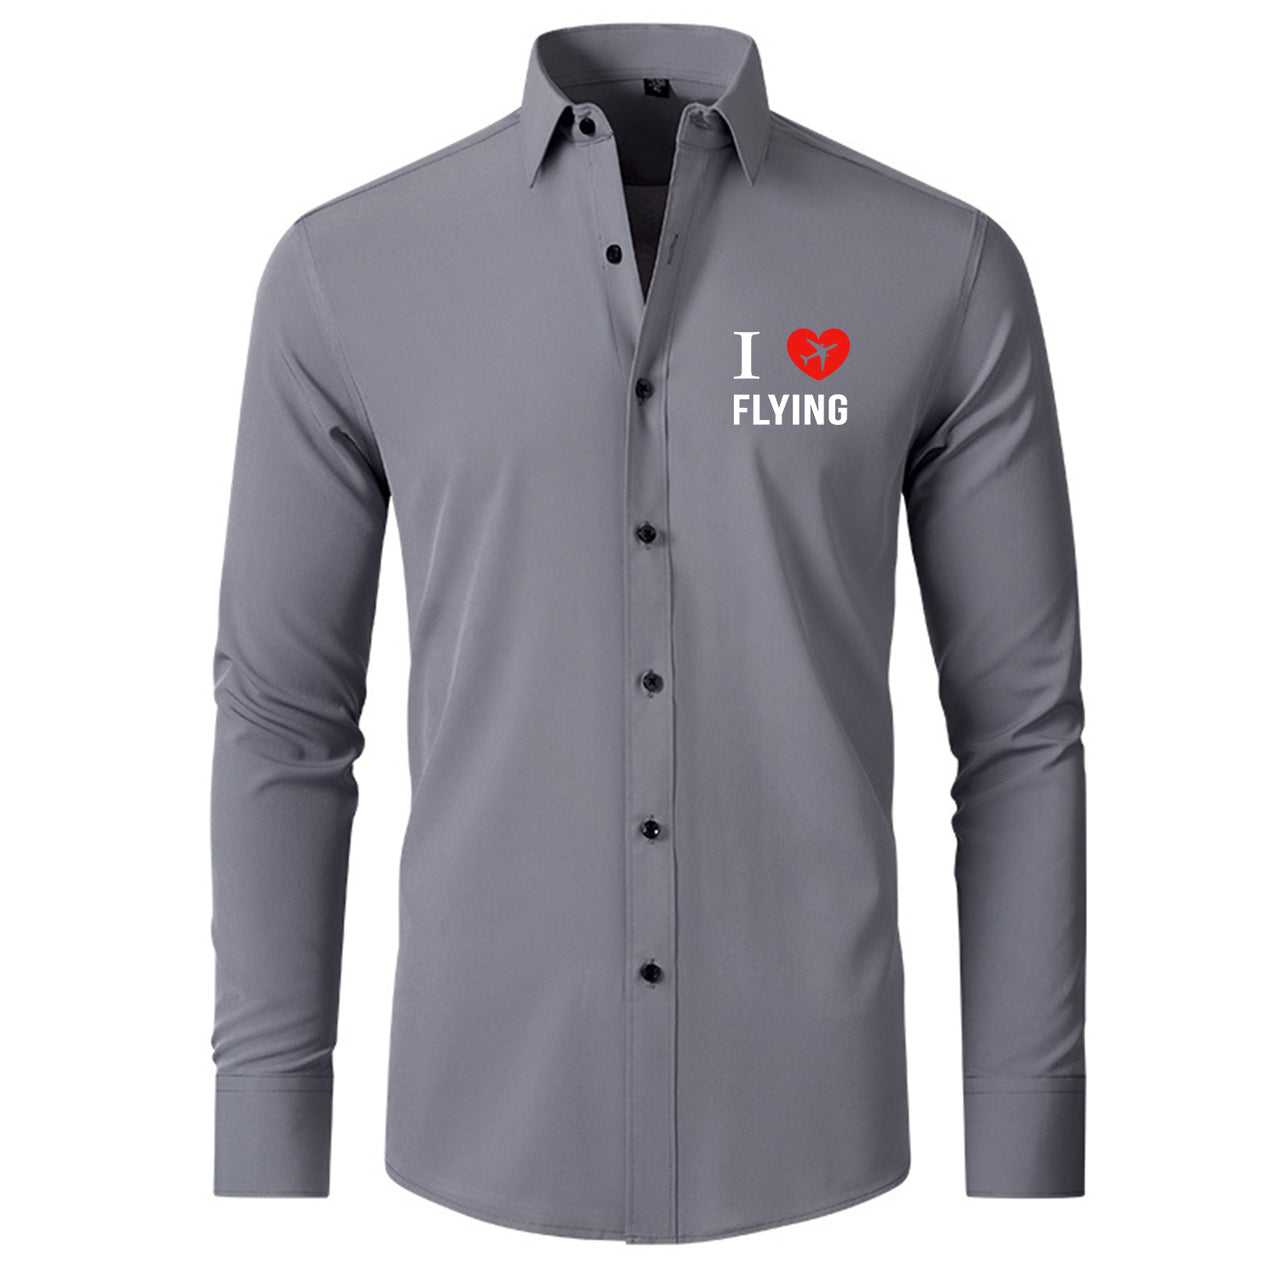 I Love Flying Designed Long Sleeve Shirts